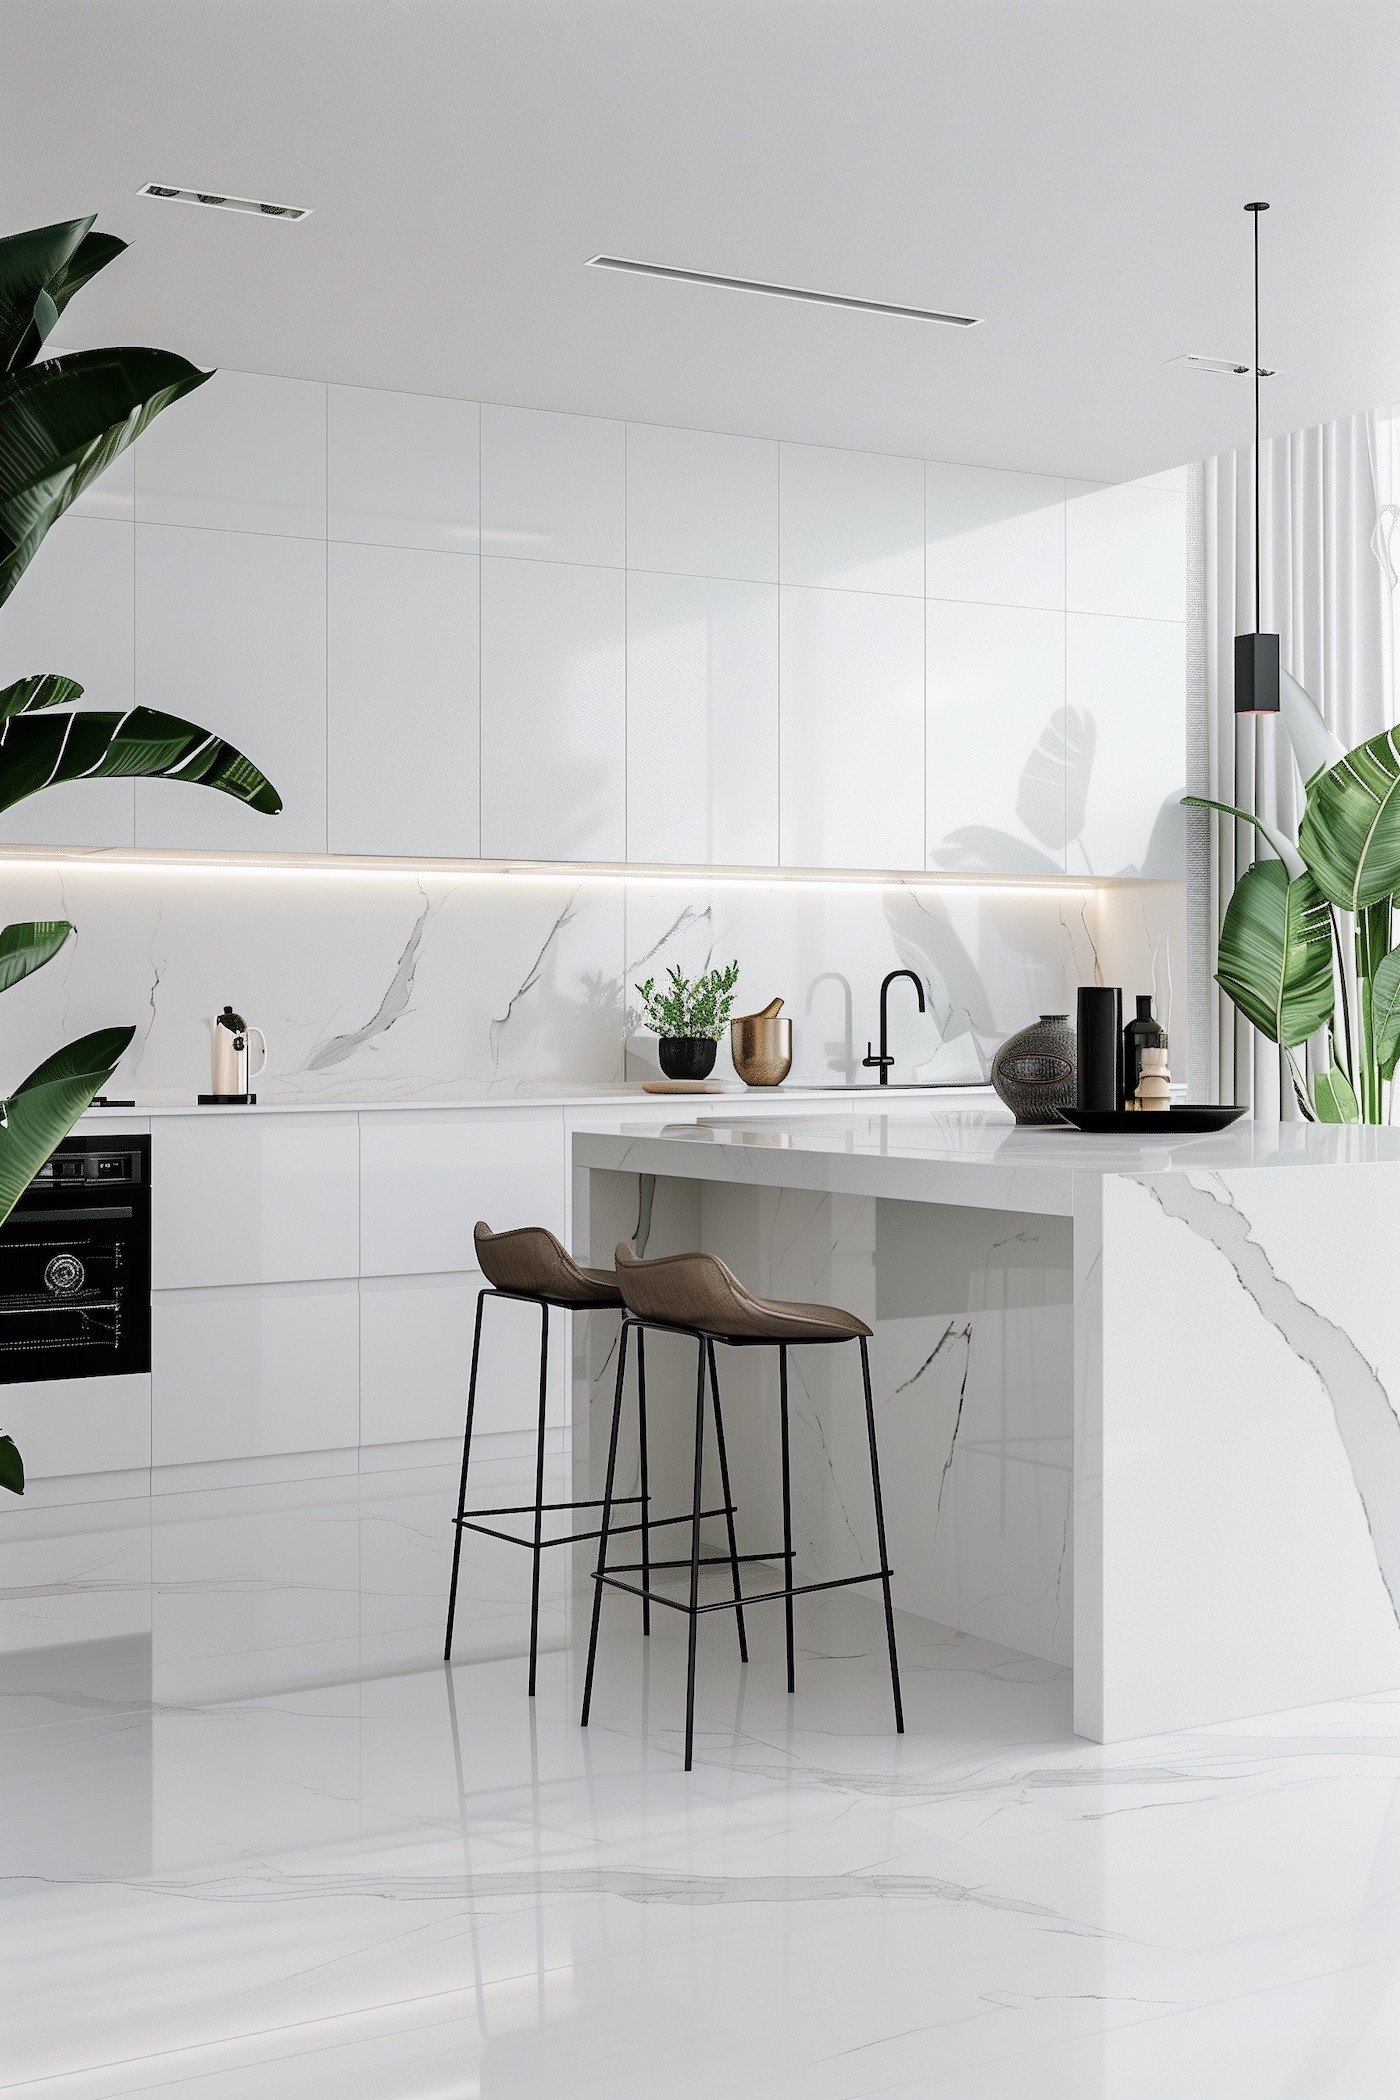 décorer cuisine blanche moderne avec plantes